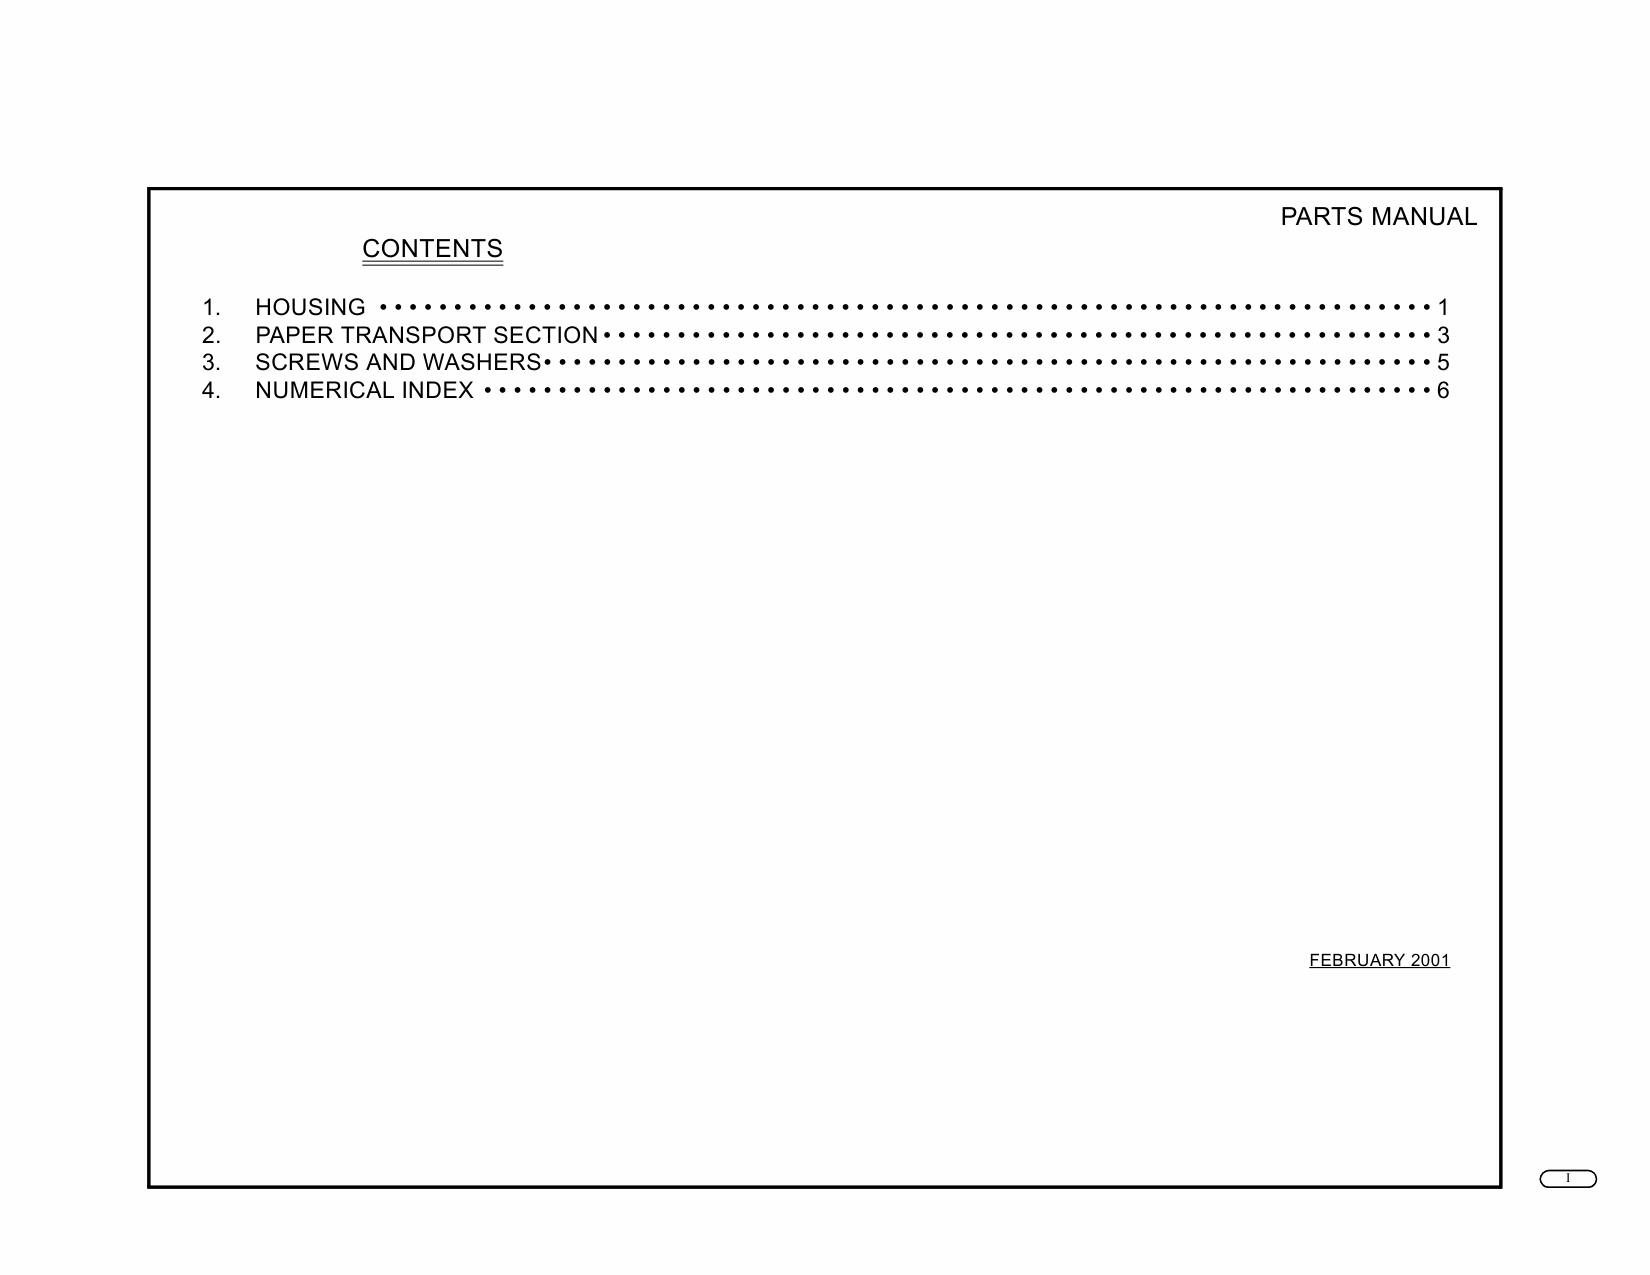 Konica-Minolta Options JS-201 Parts Manual-2